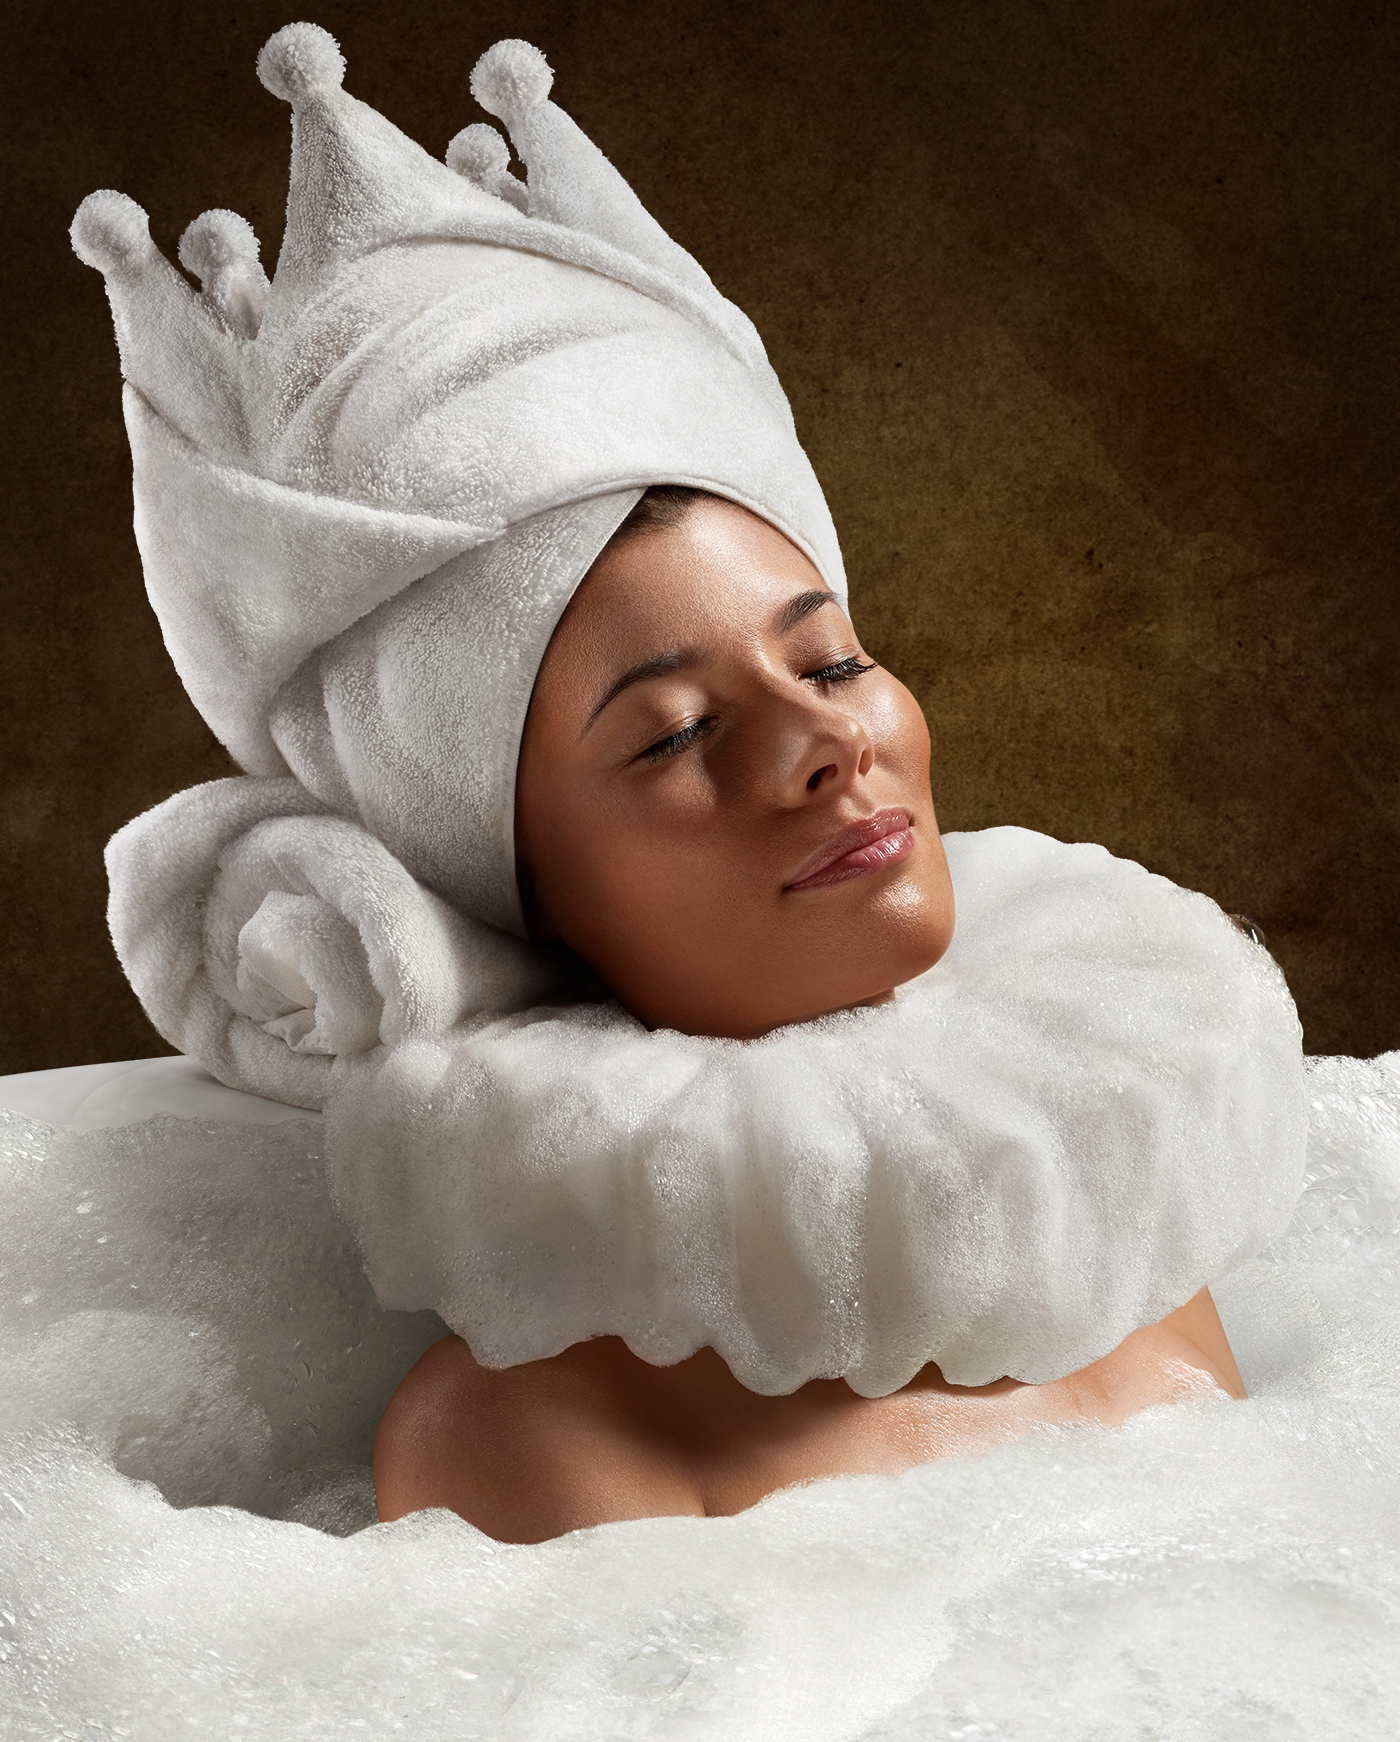 Spa beauty relax queen manipulation towel bath Foam